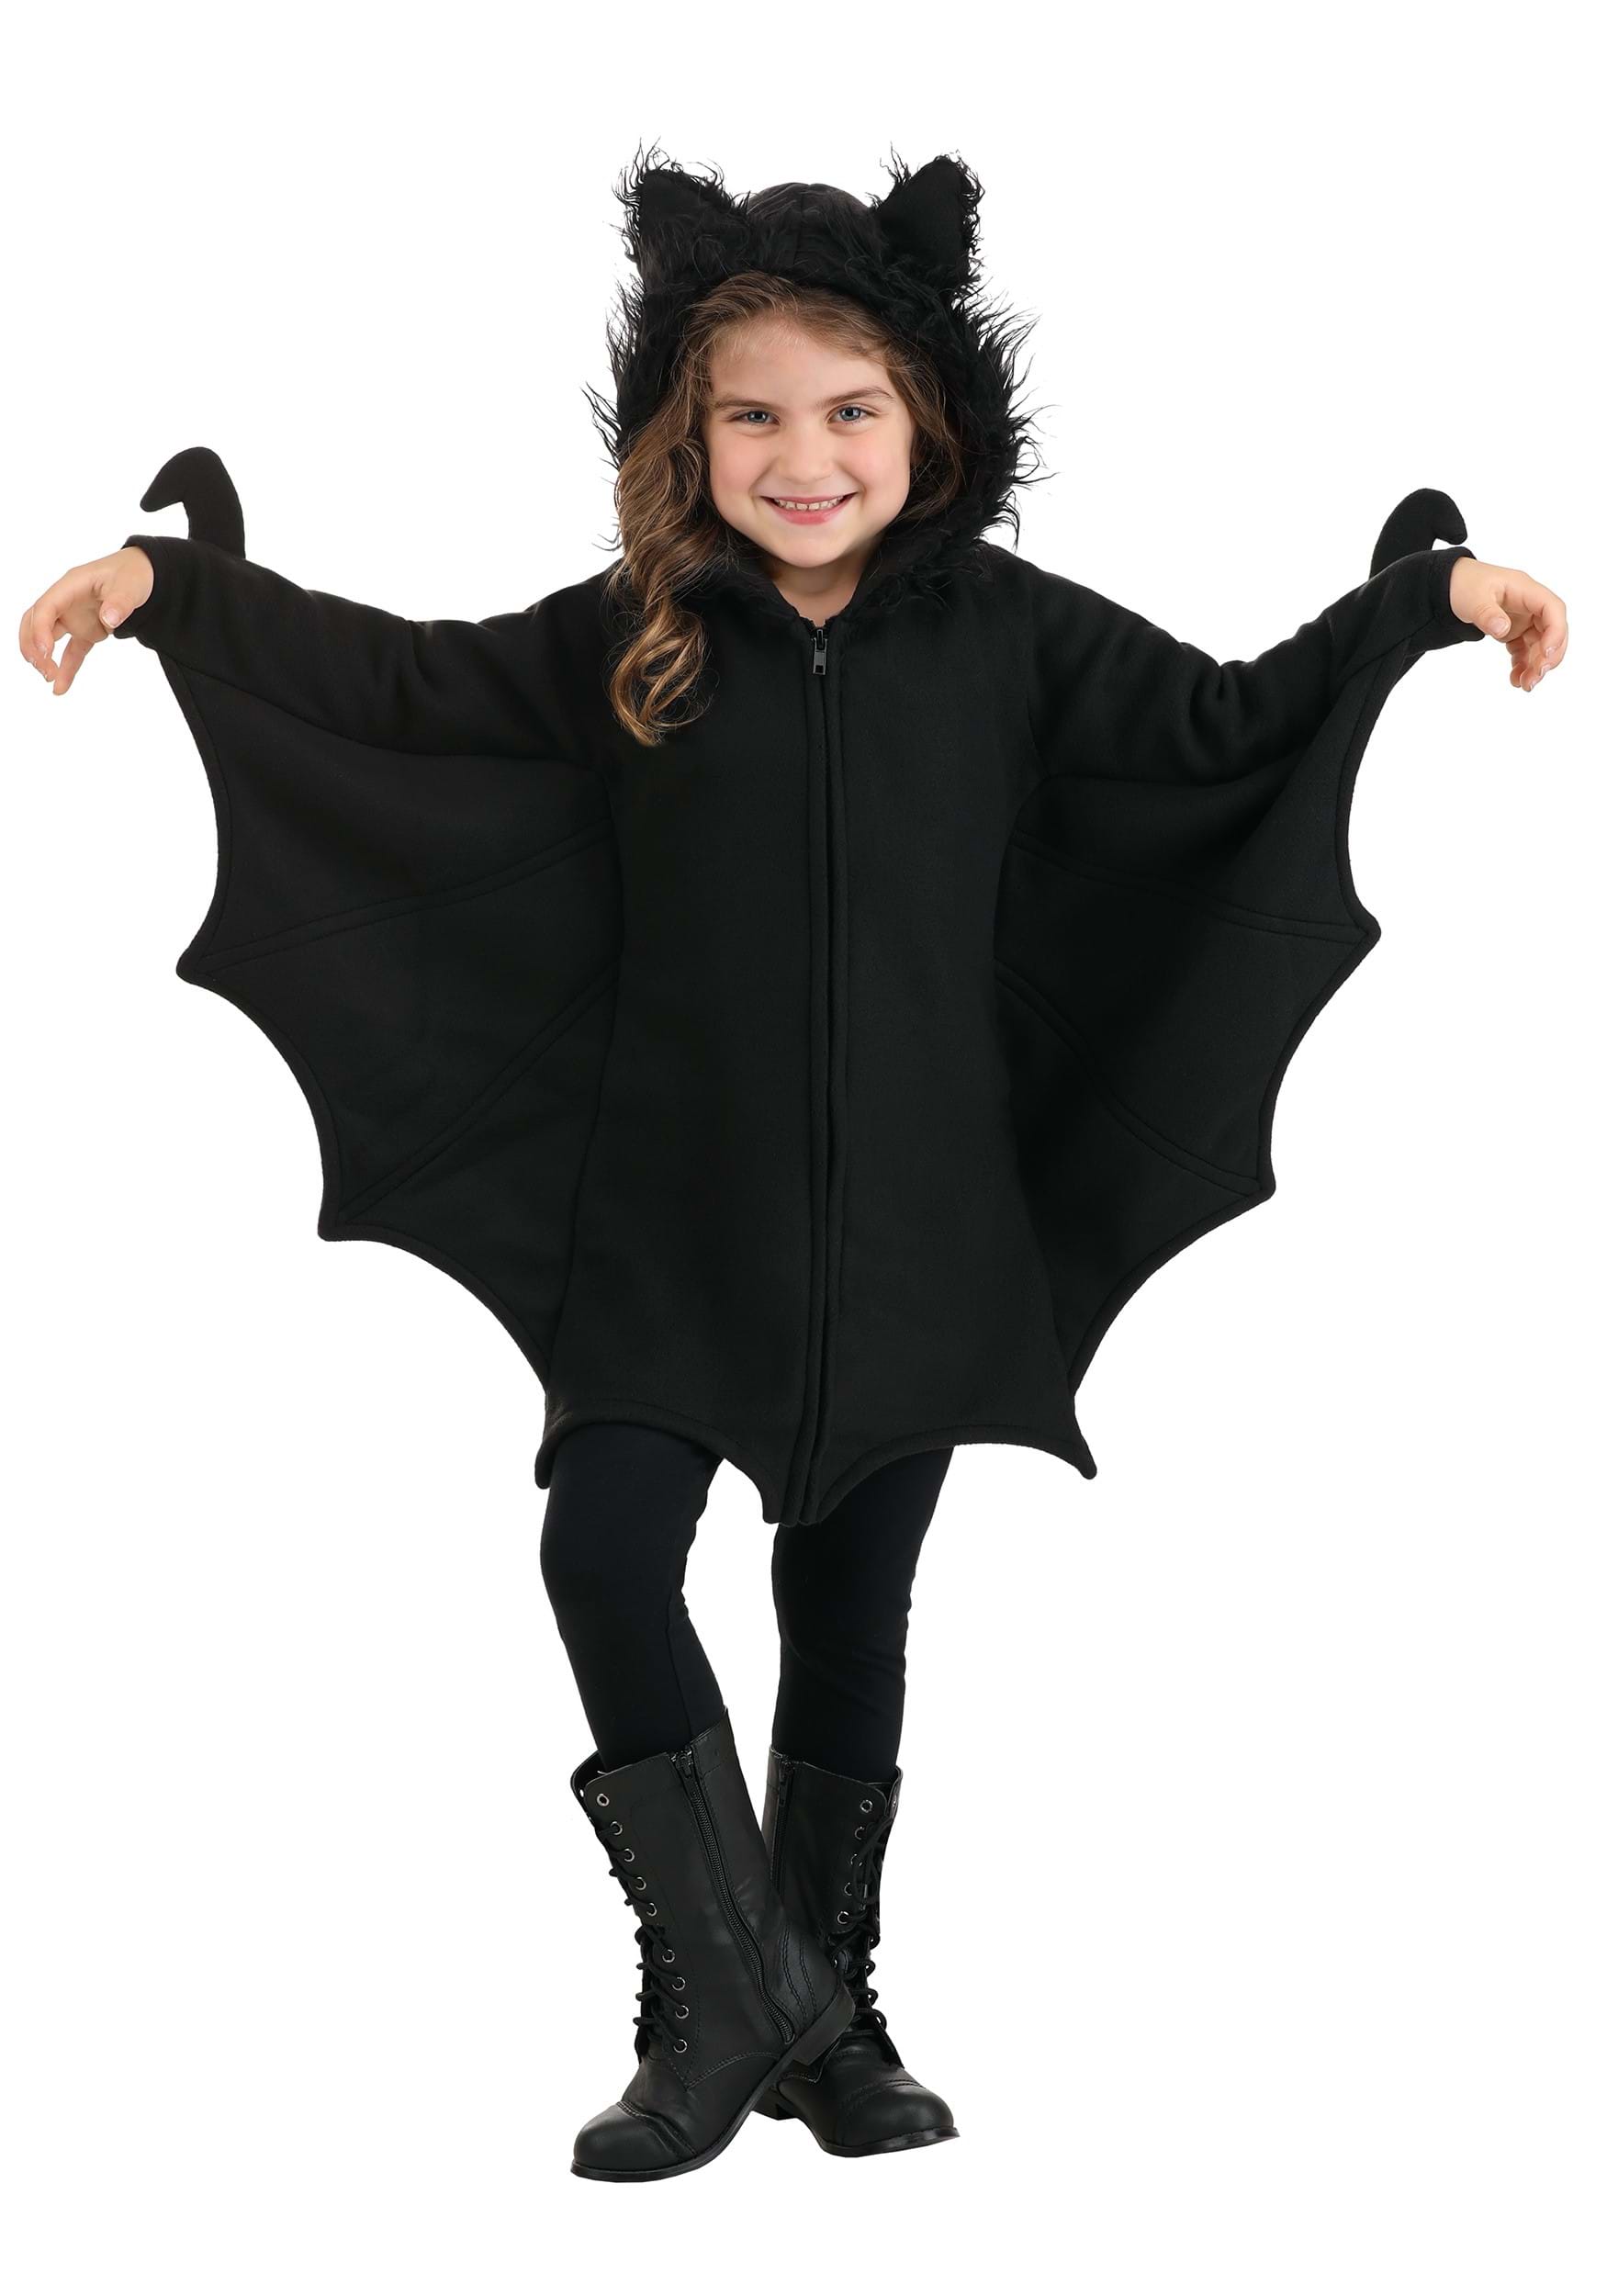 Photos - Fancy Dress Leg Avenue Cozy Black Bat Costume for Girls | Bat Costumes Black LEC49100